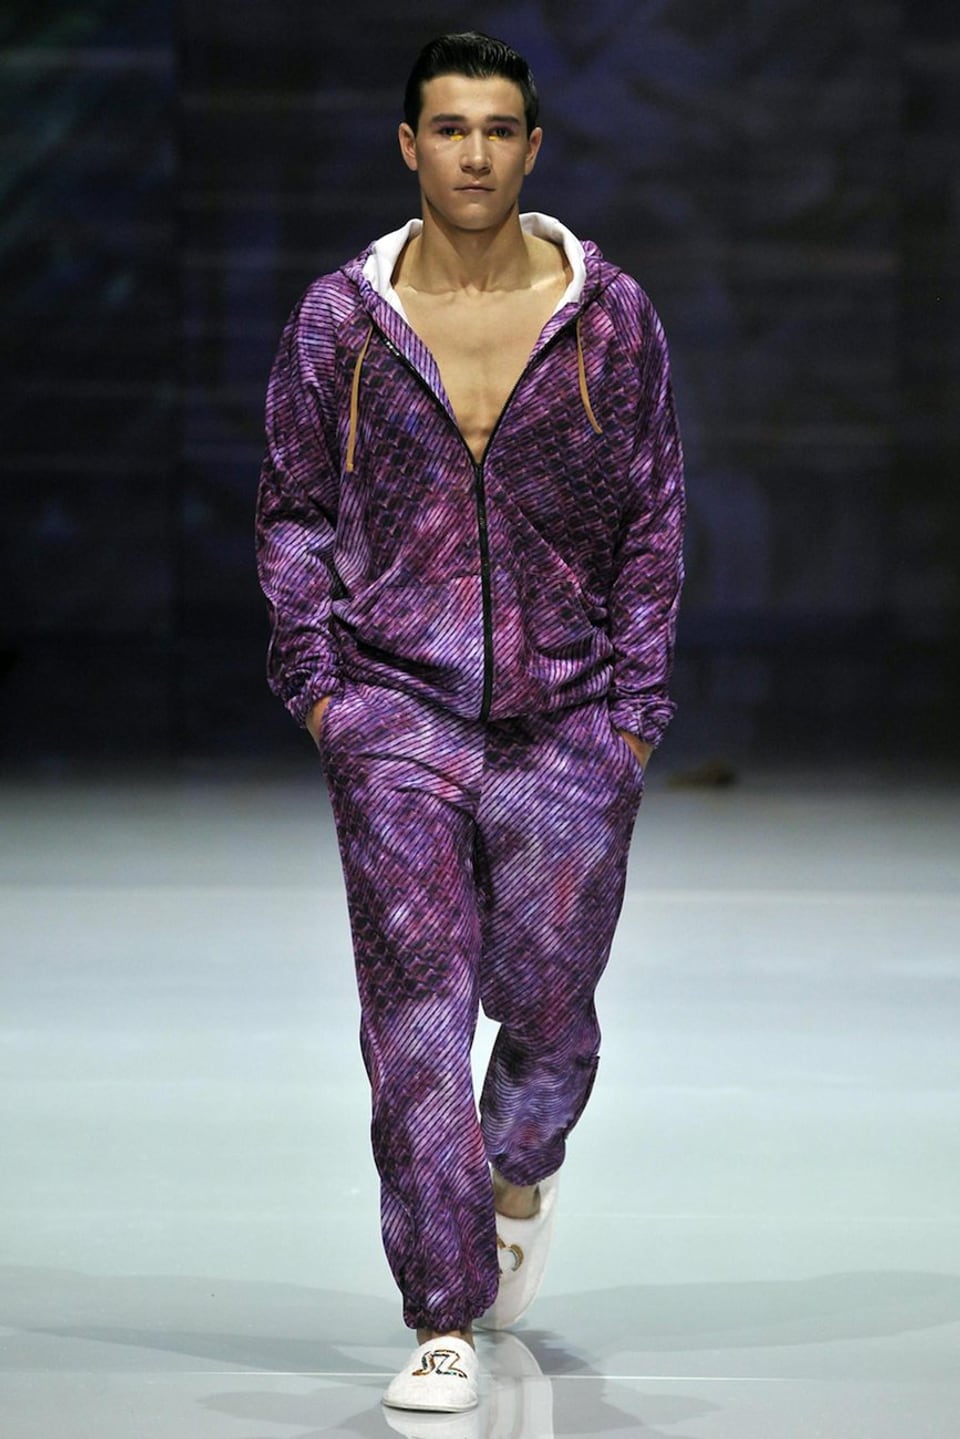 männliches Model auf Laufsteg mit vioeltten Kleider